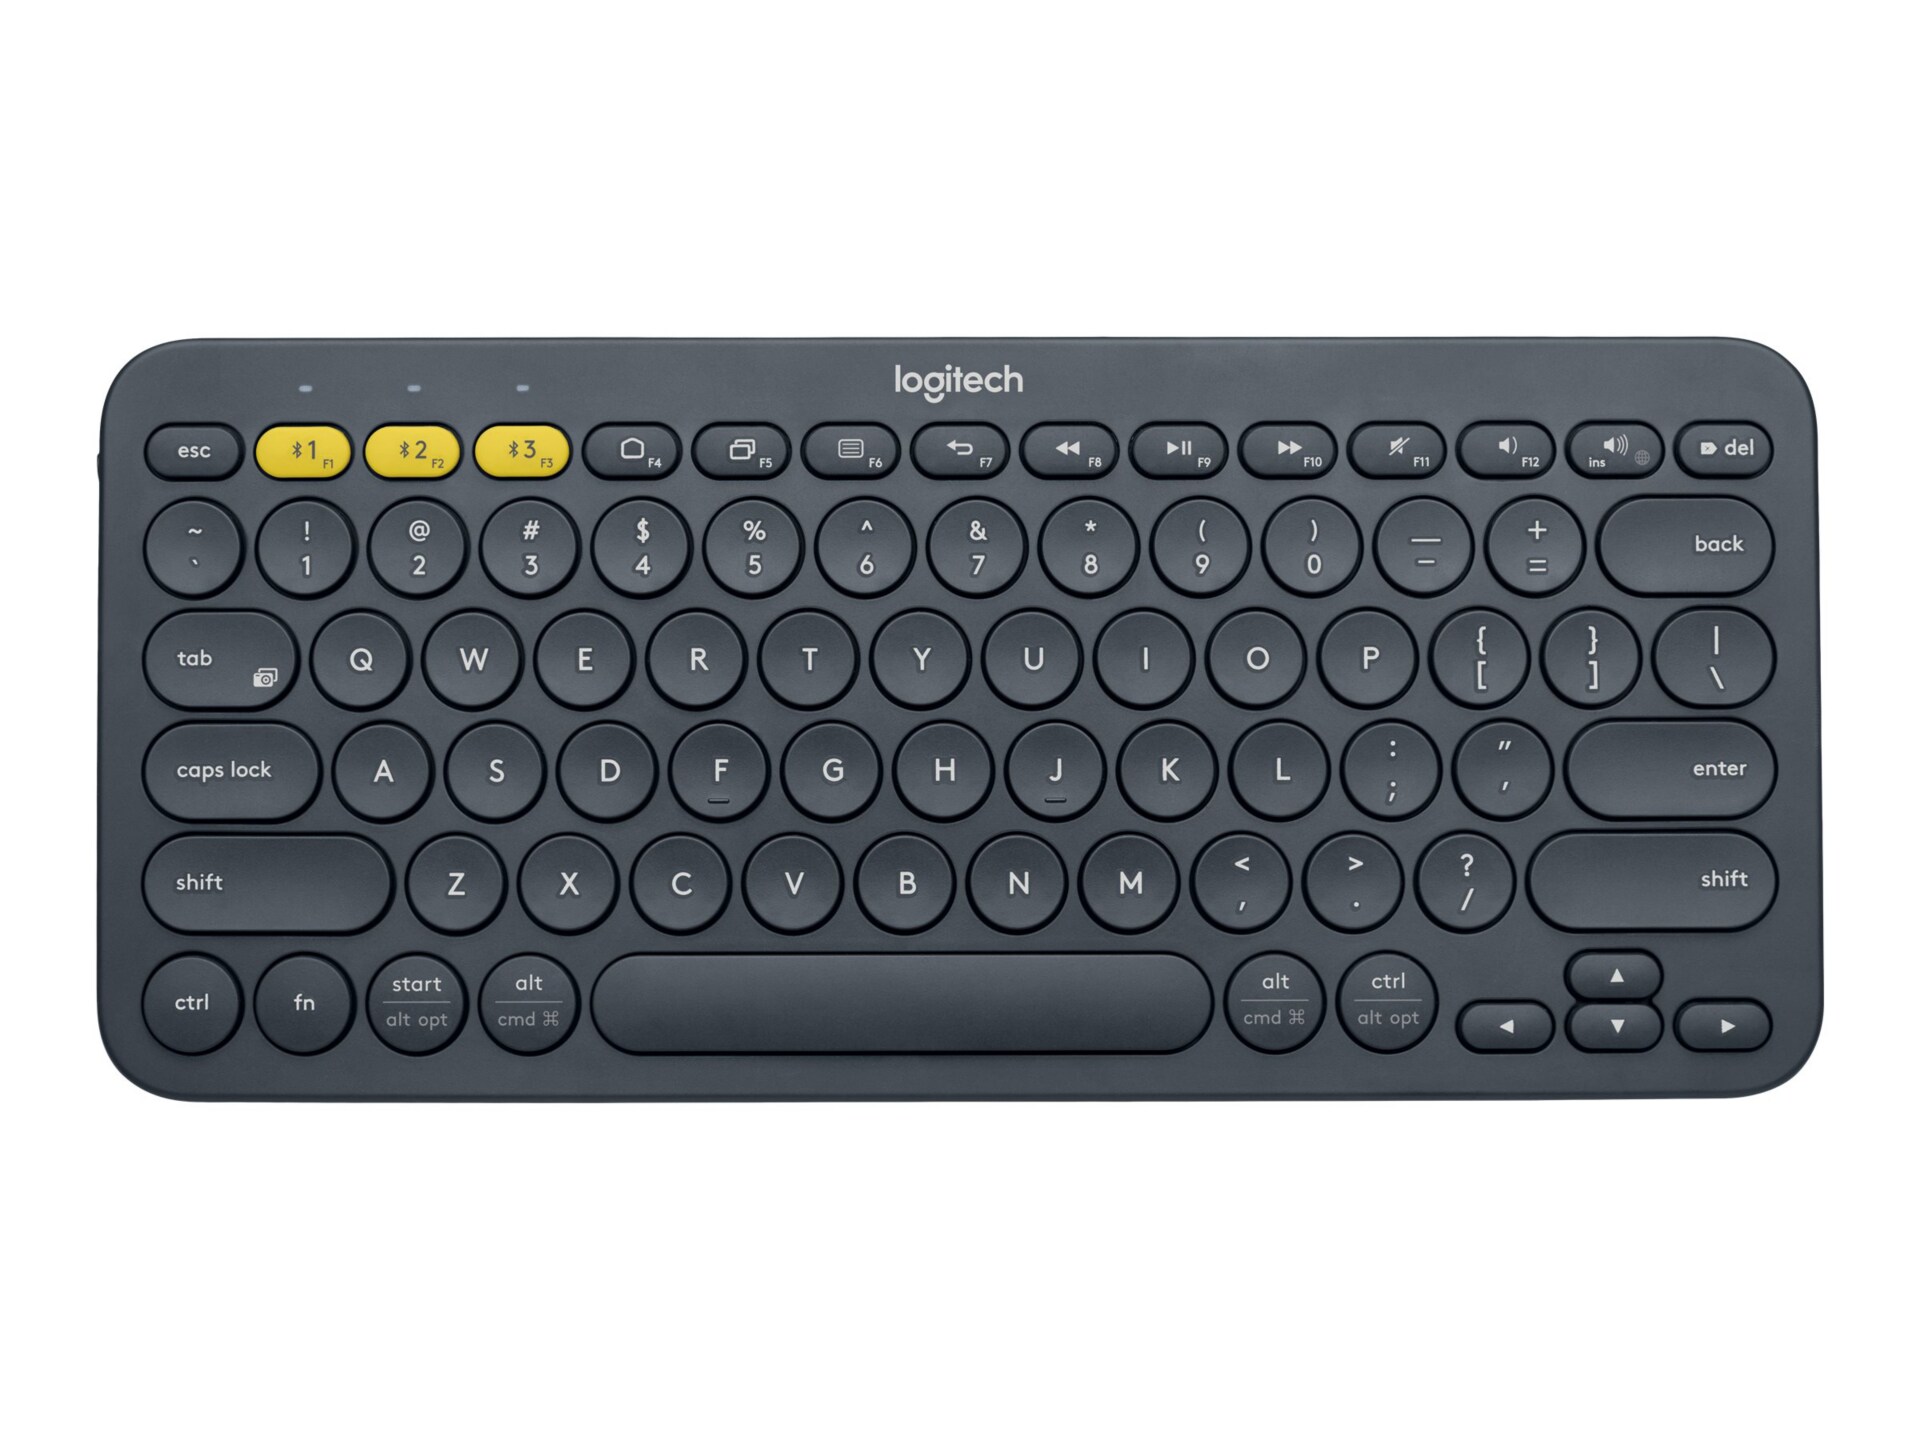 K380 Multi-Device Bluetooth Keyboard - keyboard - black - 920-007558 - -